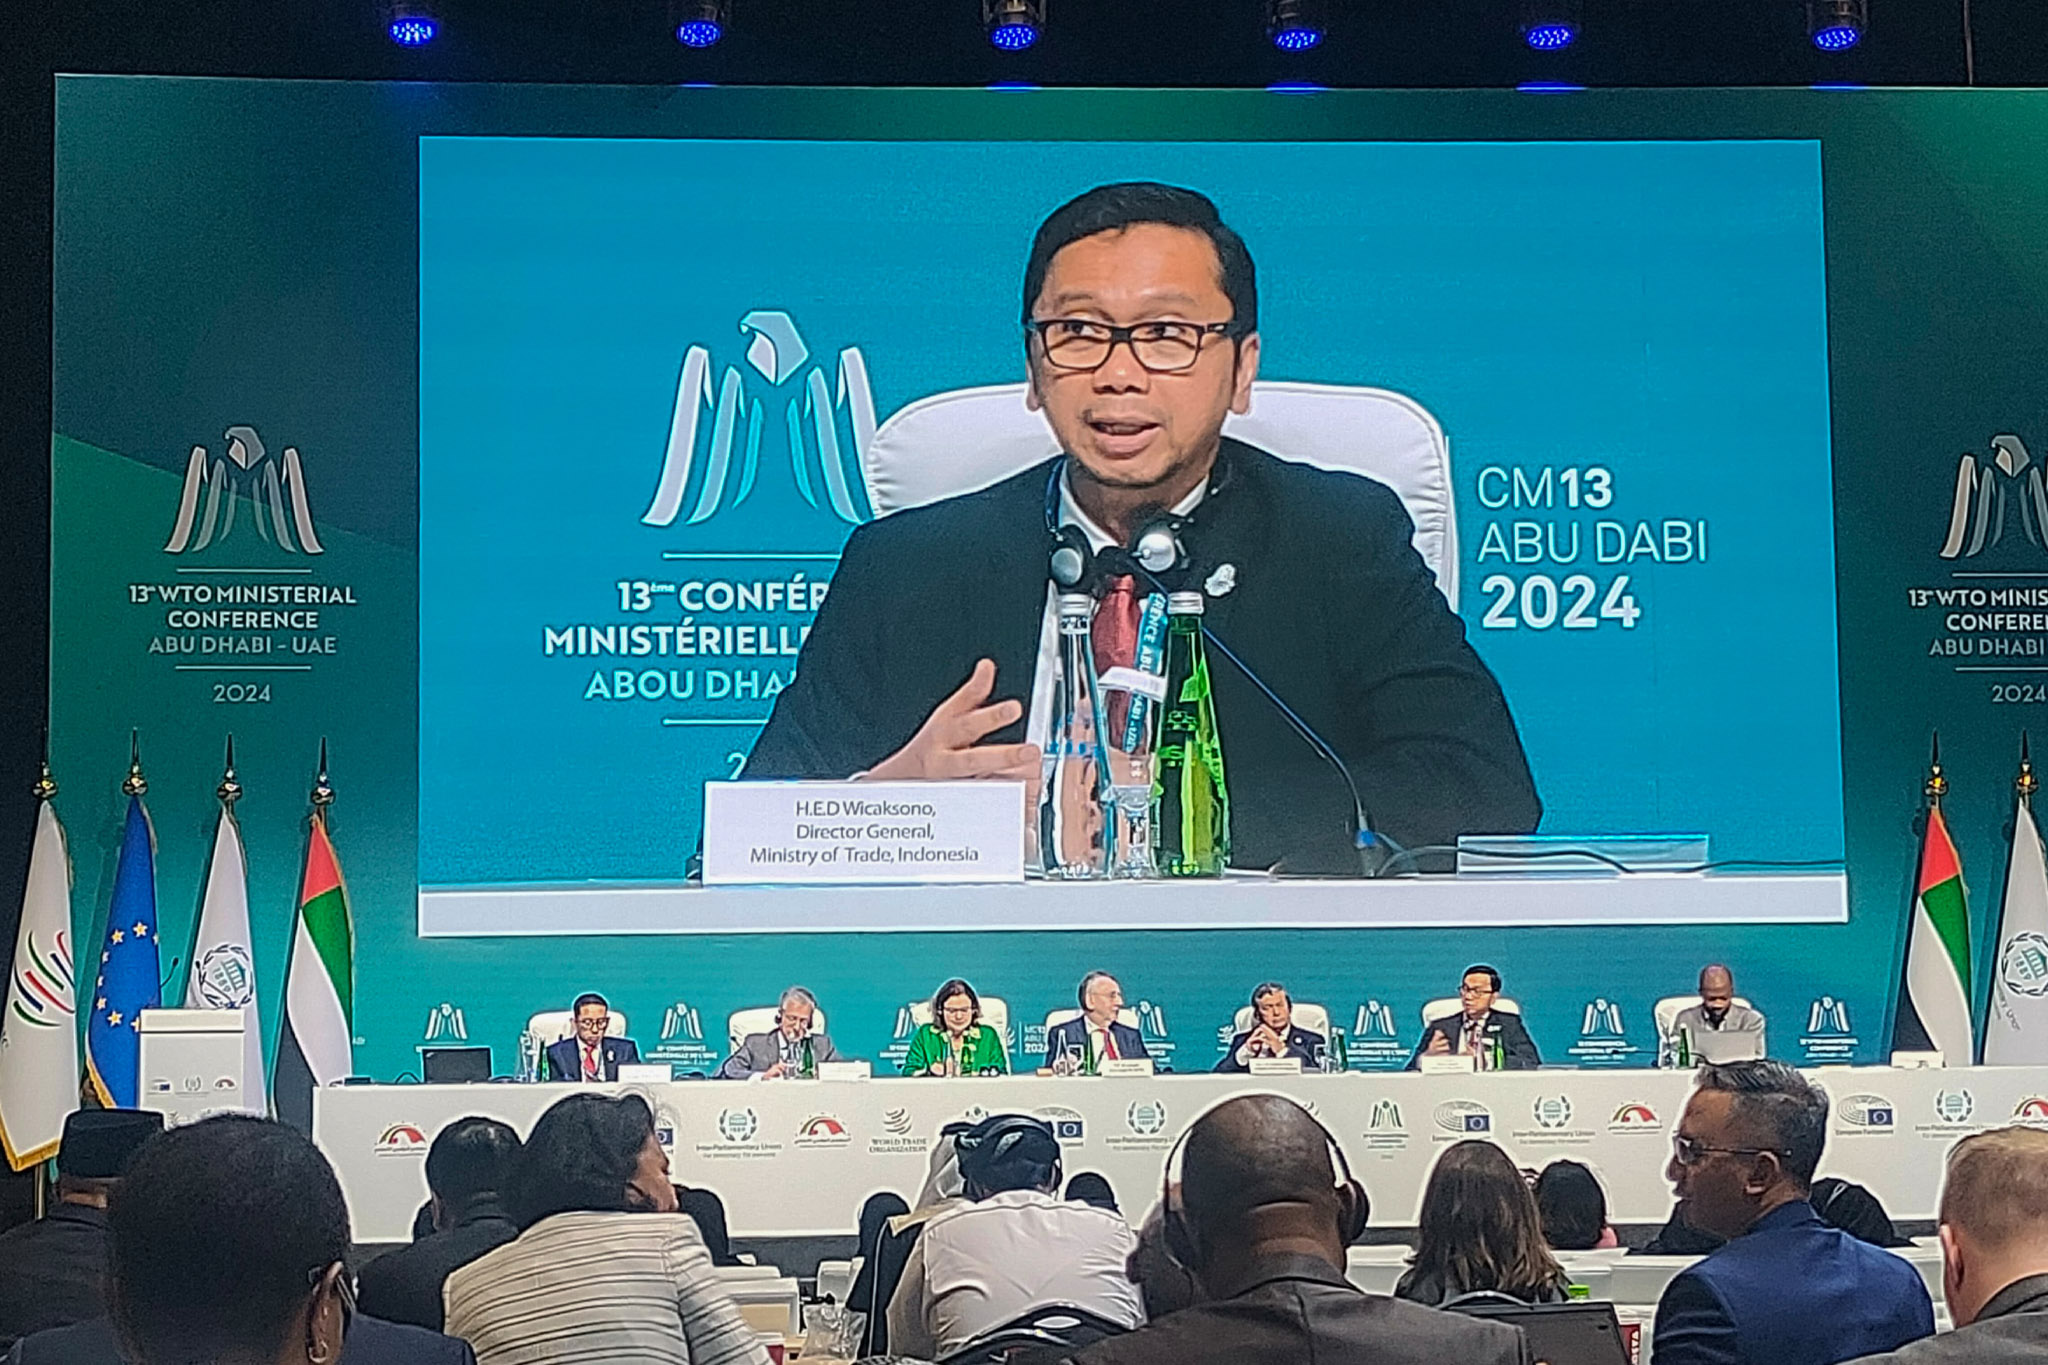 Konferensi Tingkat Menteri ke-13 WTO